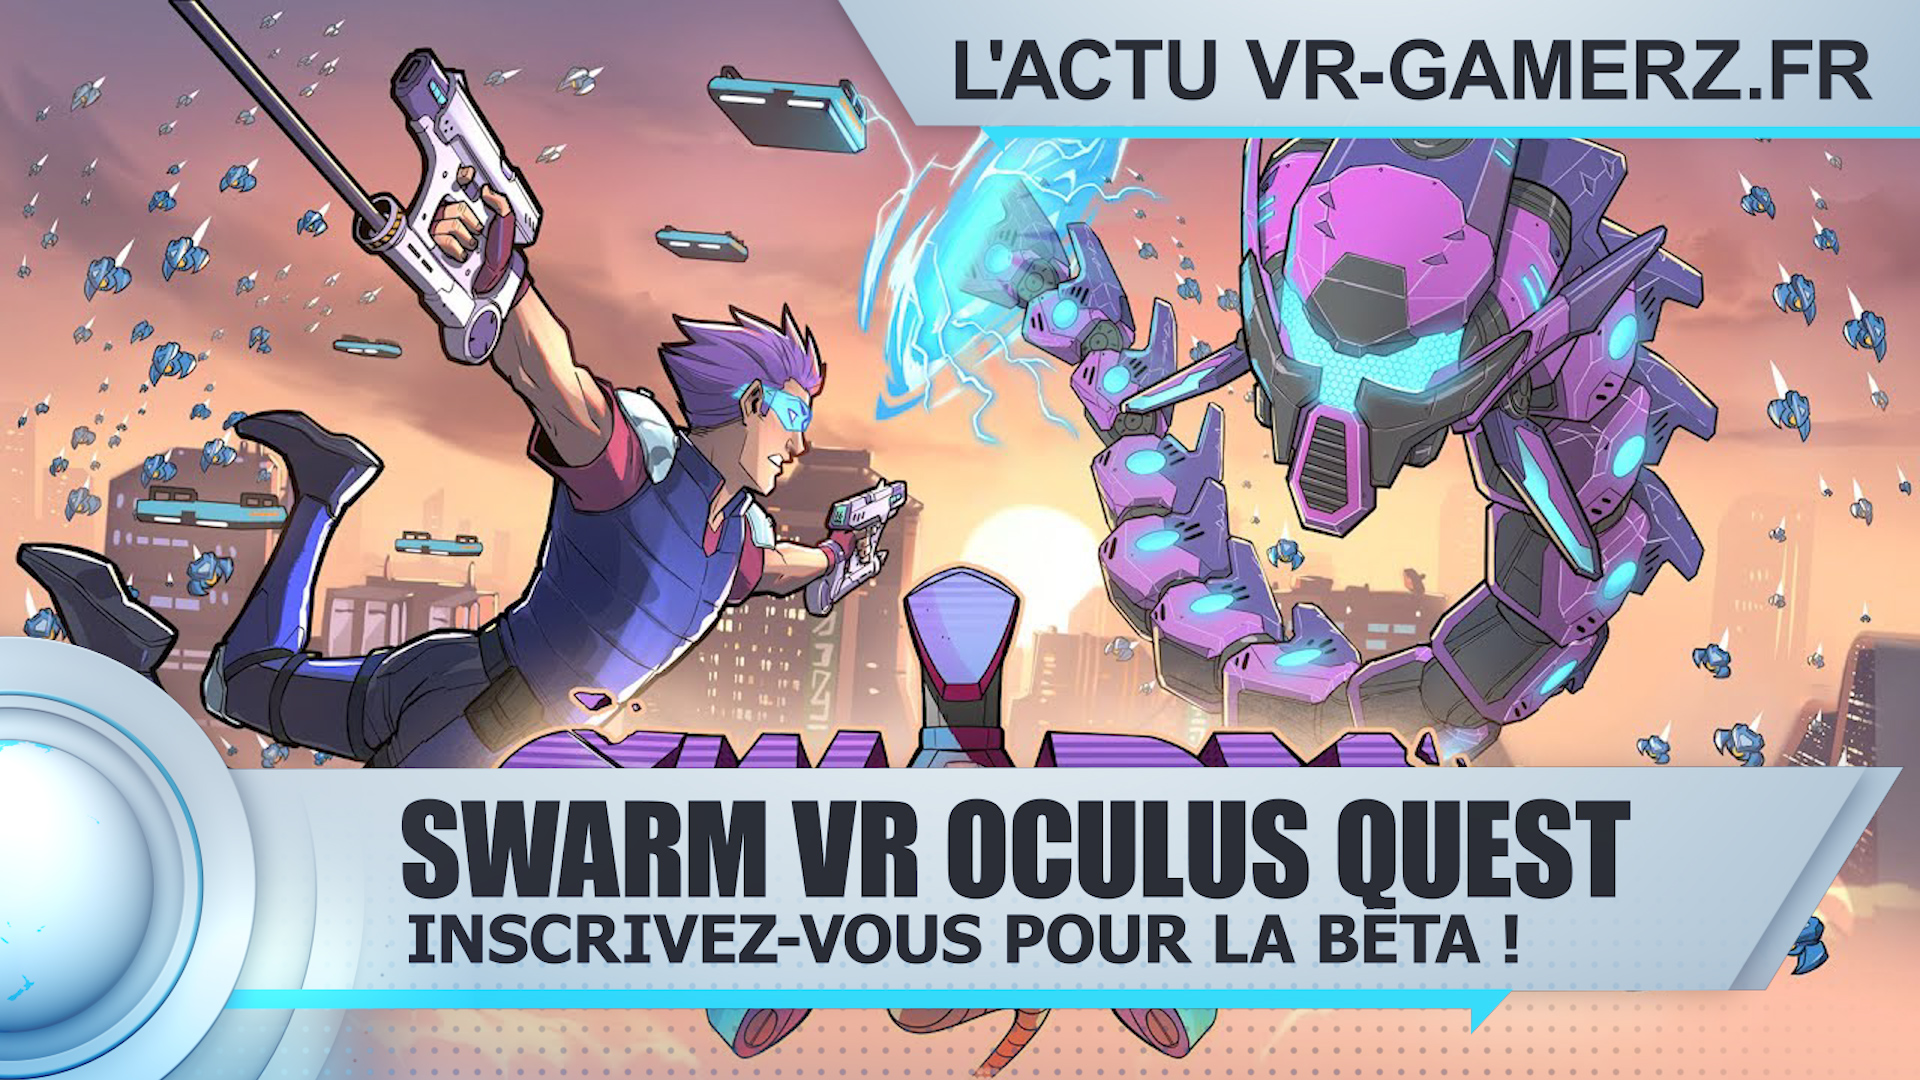 Swarm VR Oculus quest : Inscrivez-vous pour participer à la bêta